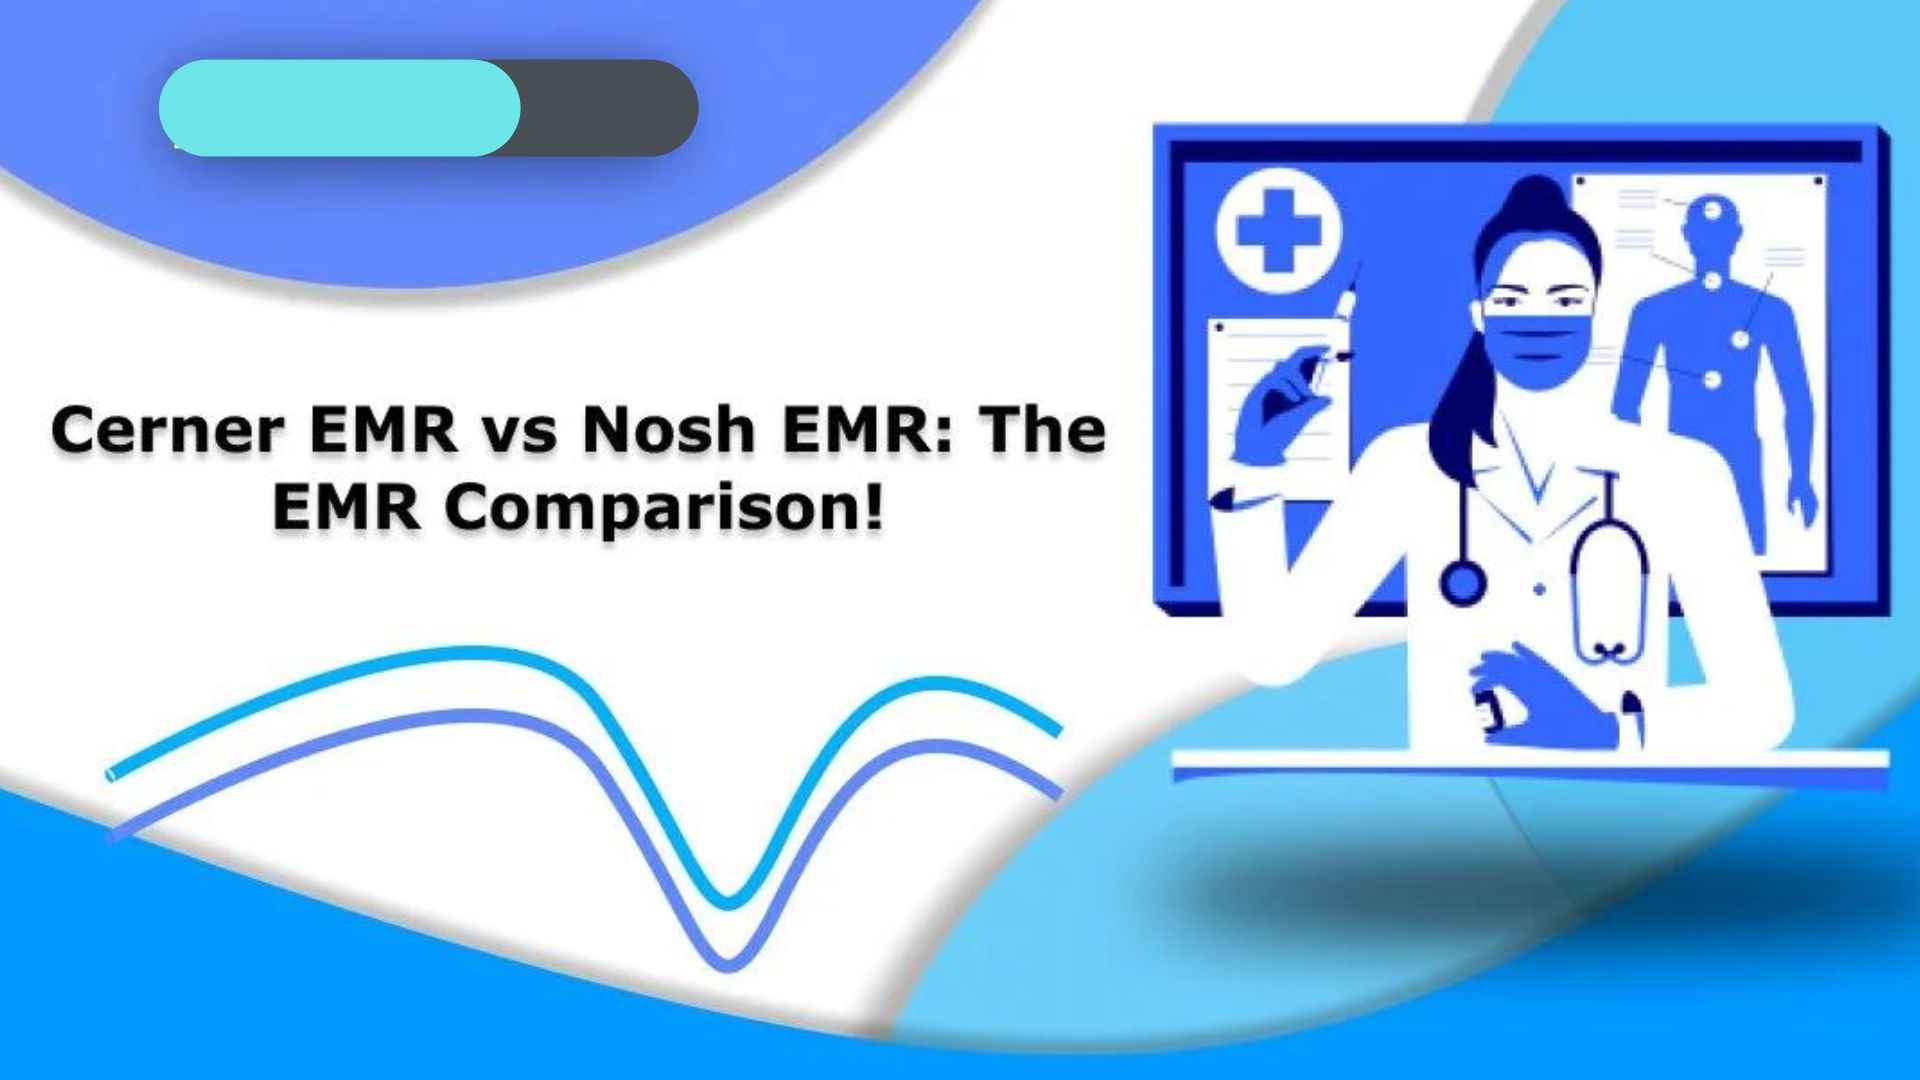 cerner emr vs nosh emr: the emr comparison